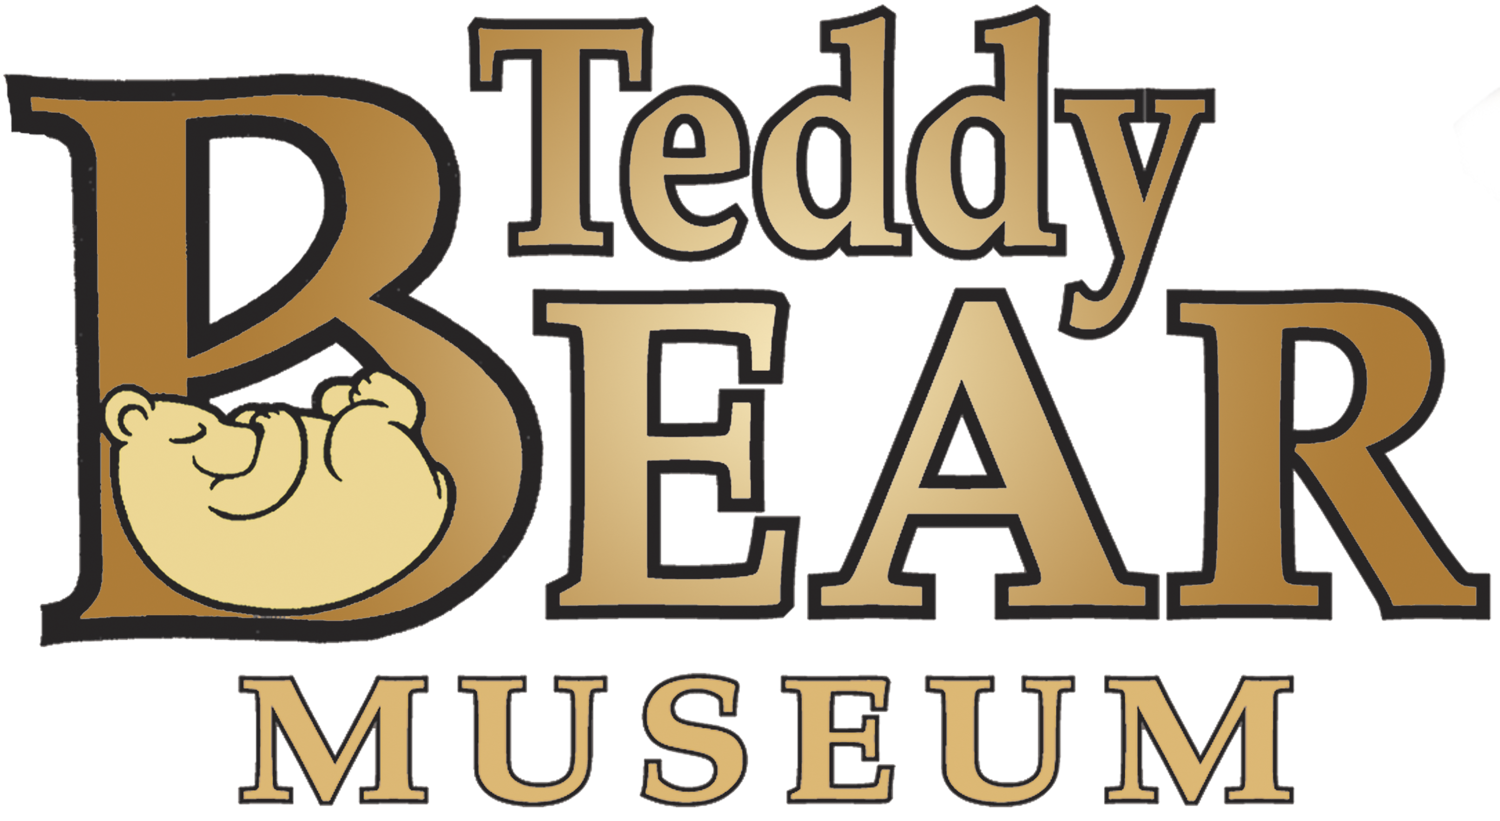 Teddy Bear House - The online shop of The Teddy Bear Museum